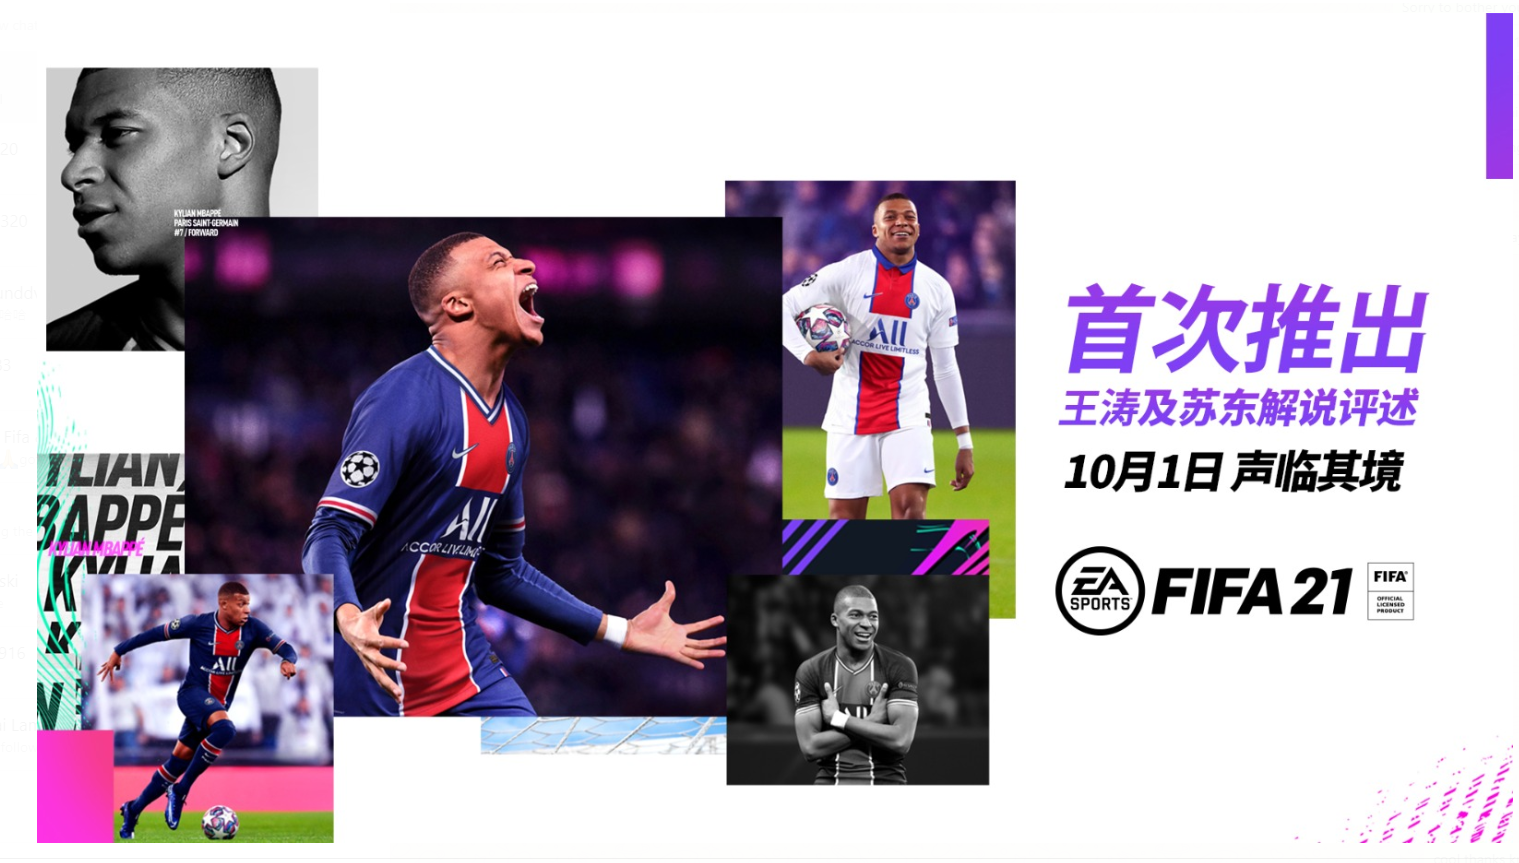 FIFA21首次推出官方中文解说 两大足球评述员助阵_Sports